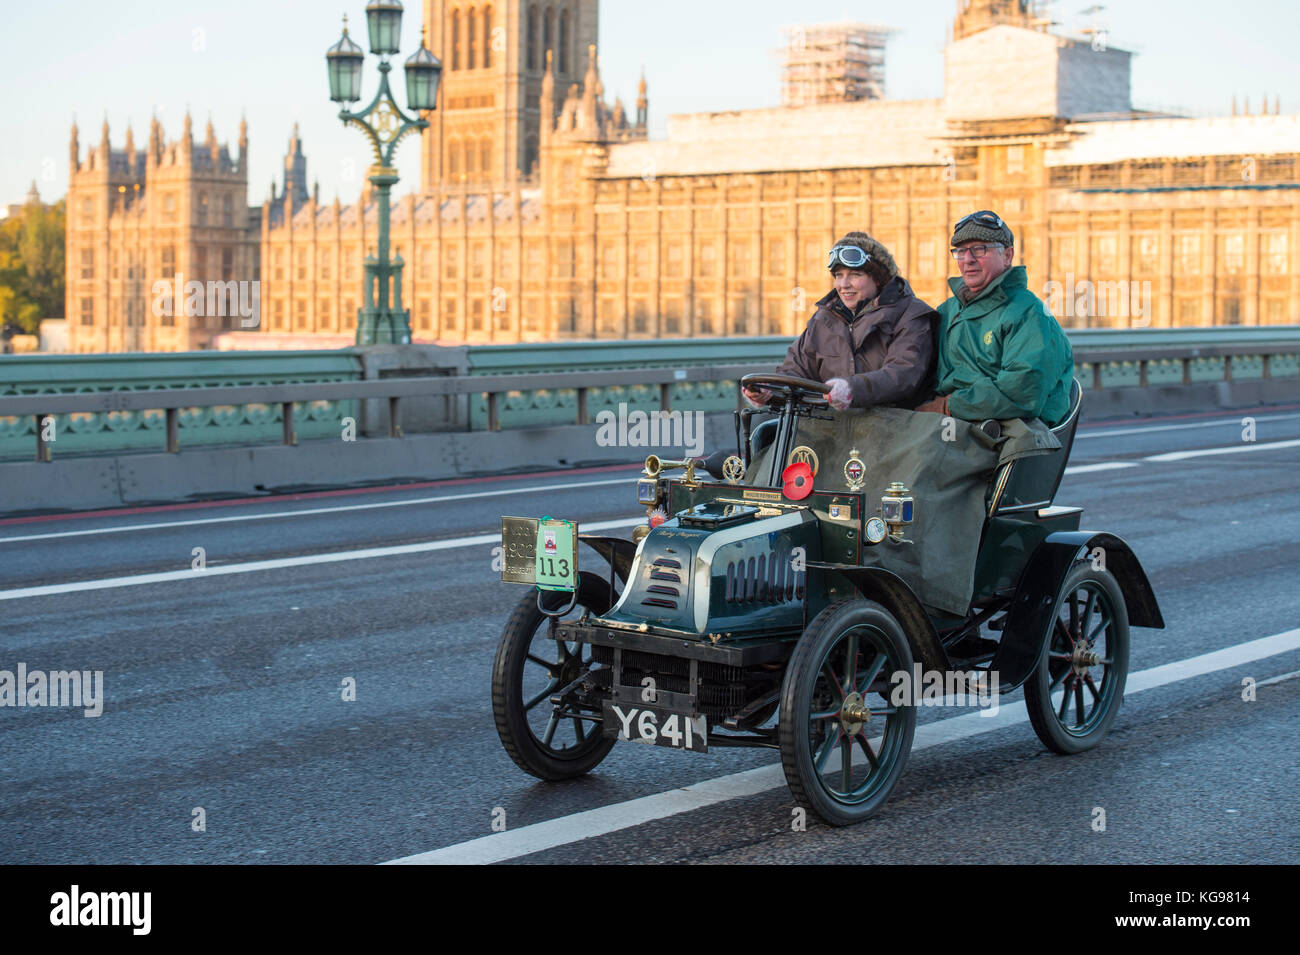 5 novembre 2017. Bonhams London à Brighton, la course automobile de vétéran, la plus longue course automobile au monde, 1902 Peugeot sur le pont de Westminster. Banque D'Images